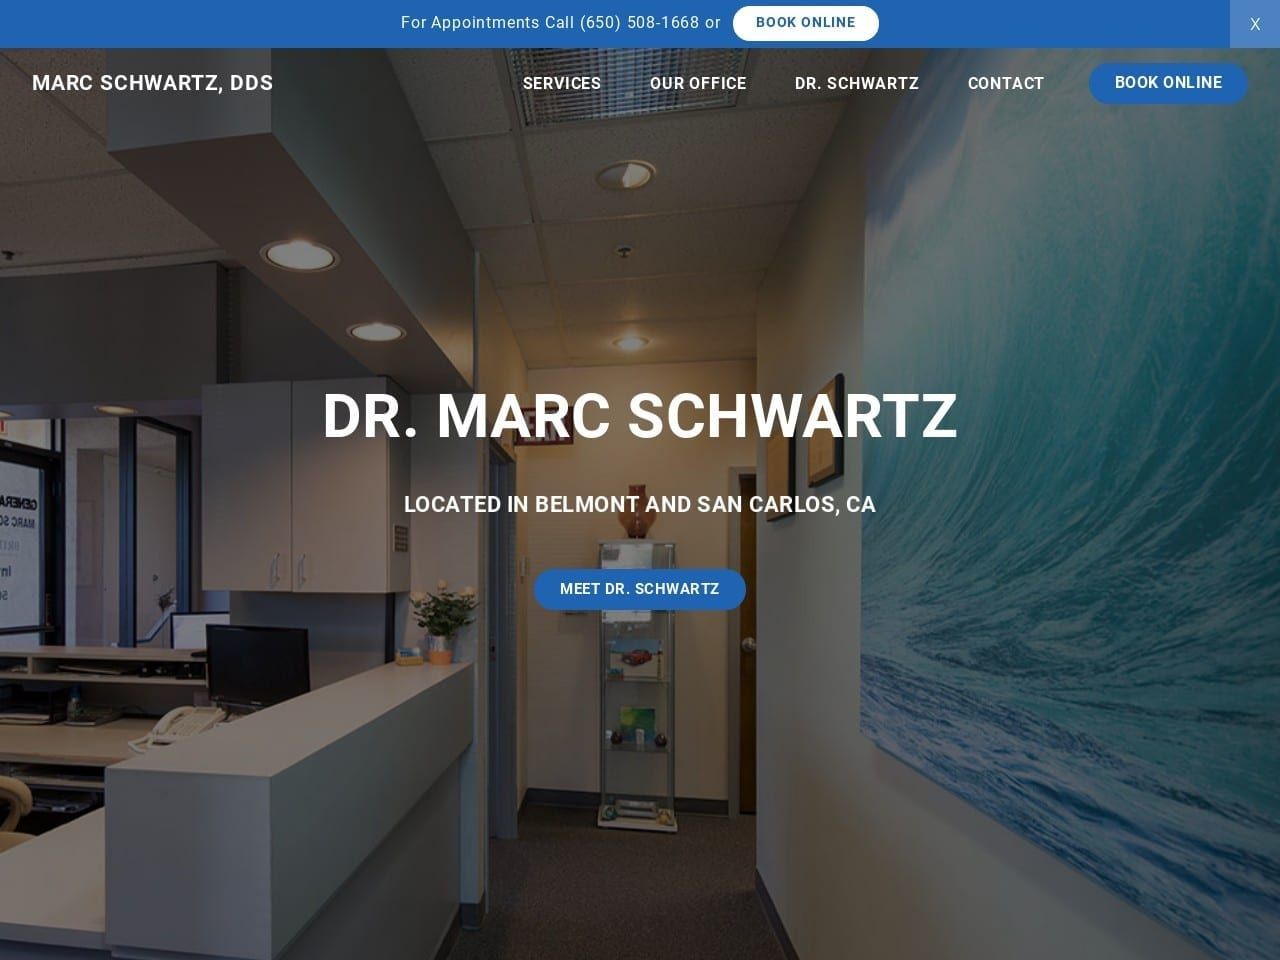 Marc A. Schwartz DDS Website Screenshot from drmarcschwartz.com